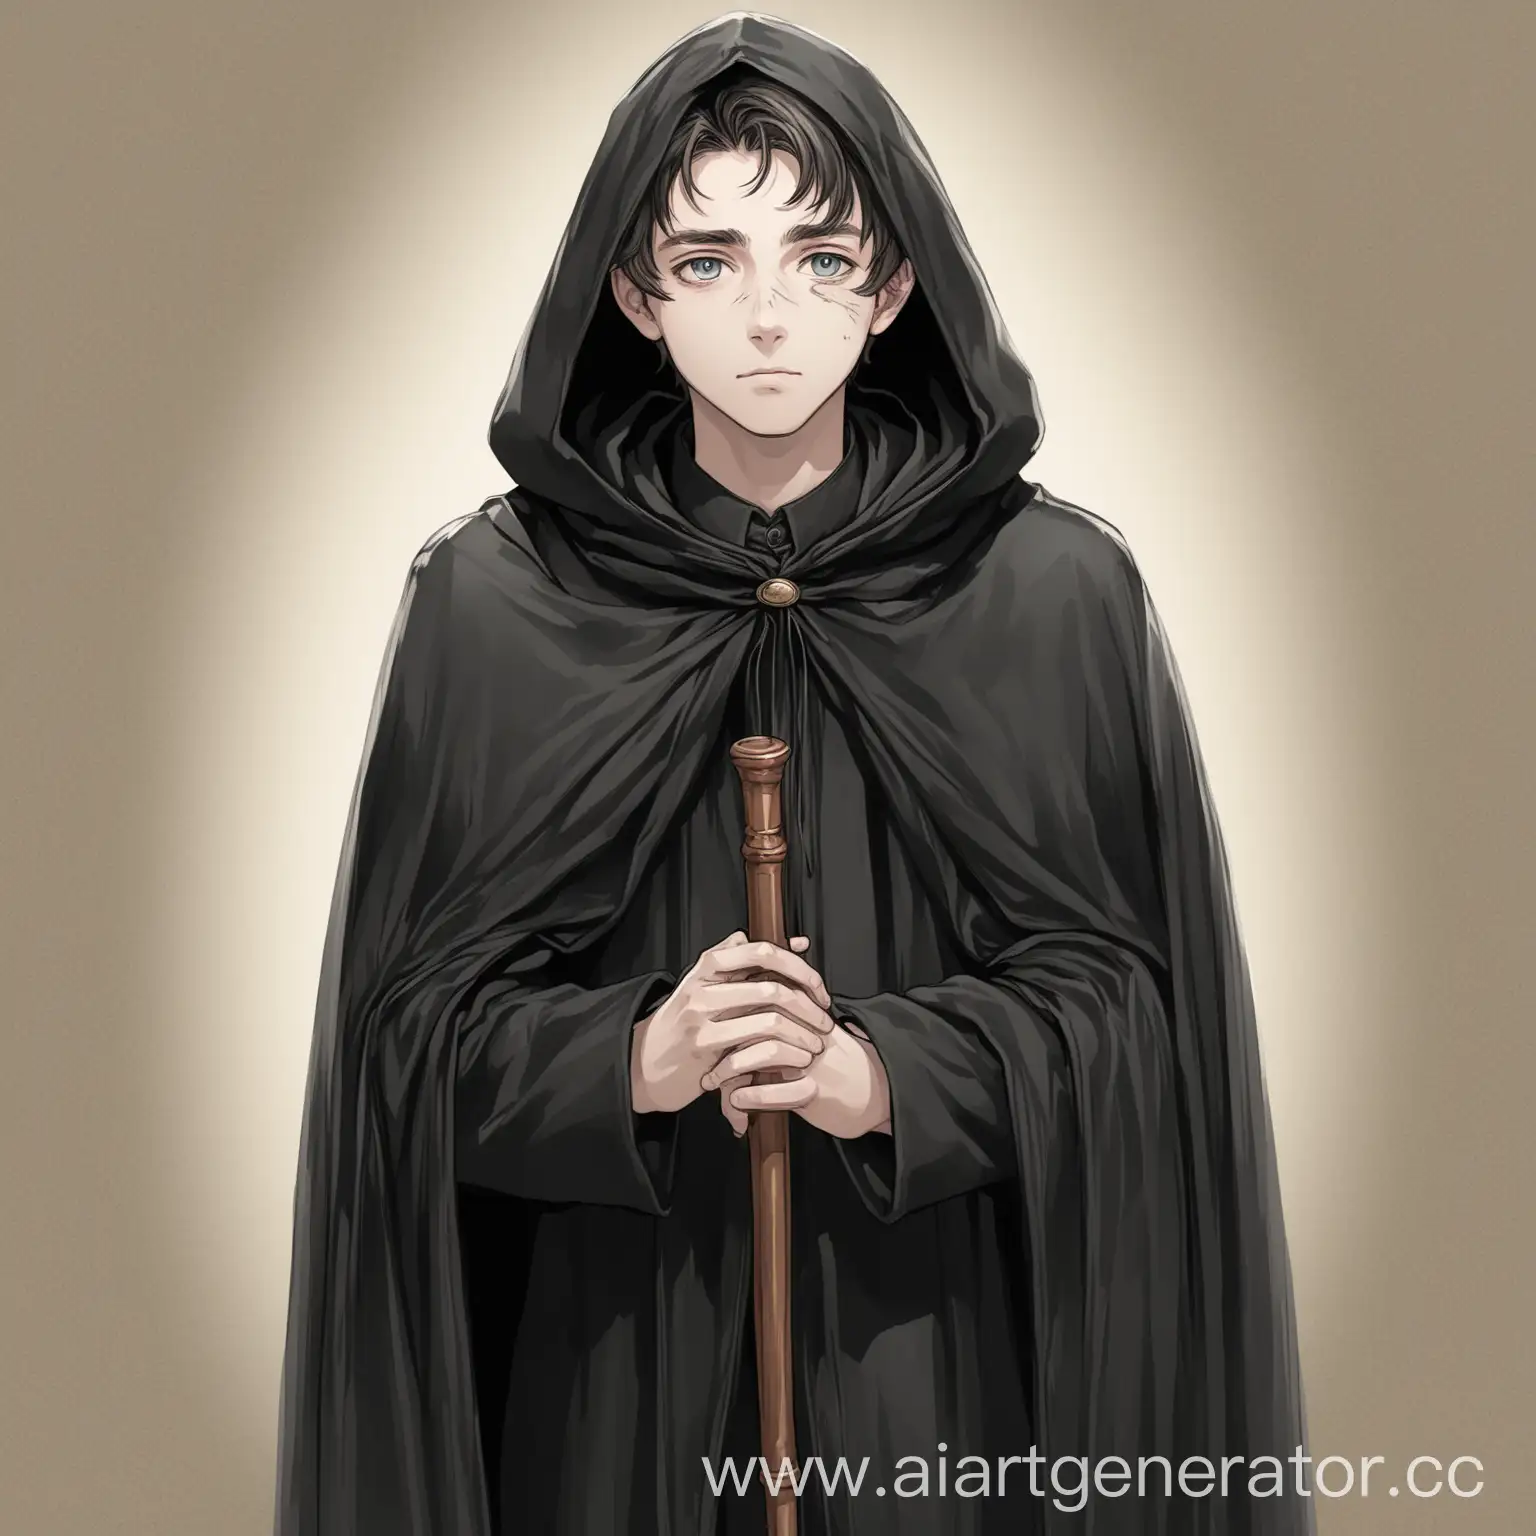 Рисунок: молодой человек с добрым выражением лица в чёрном плаще стоит, опираясь двумя руками на трость, смотрит в камеру